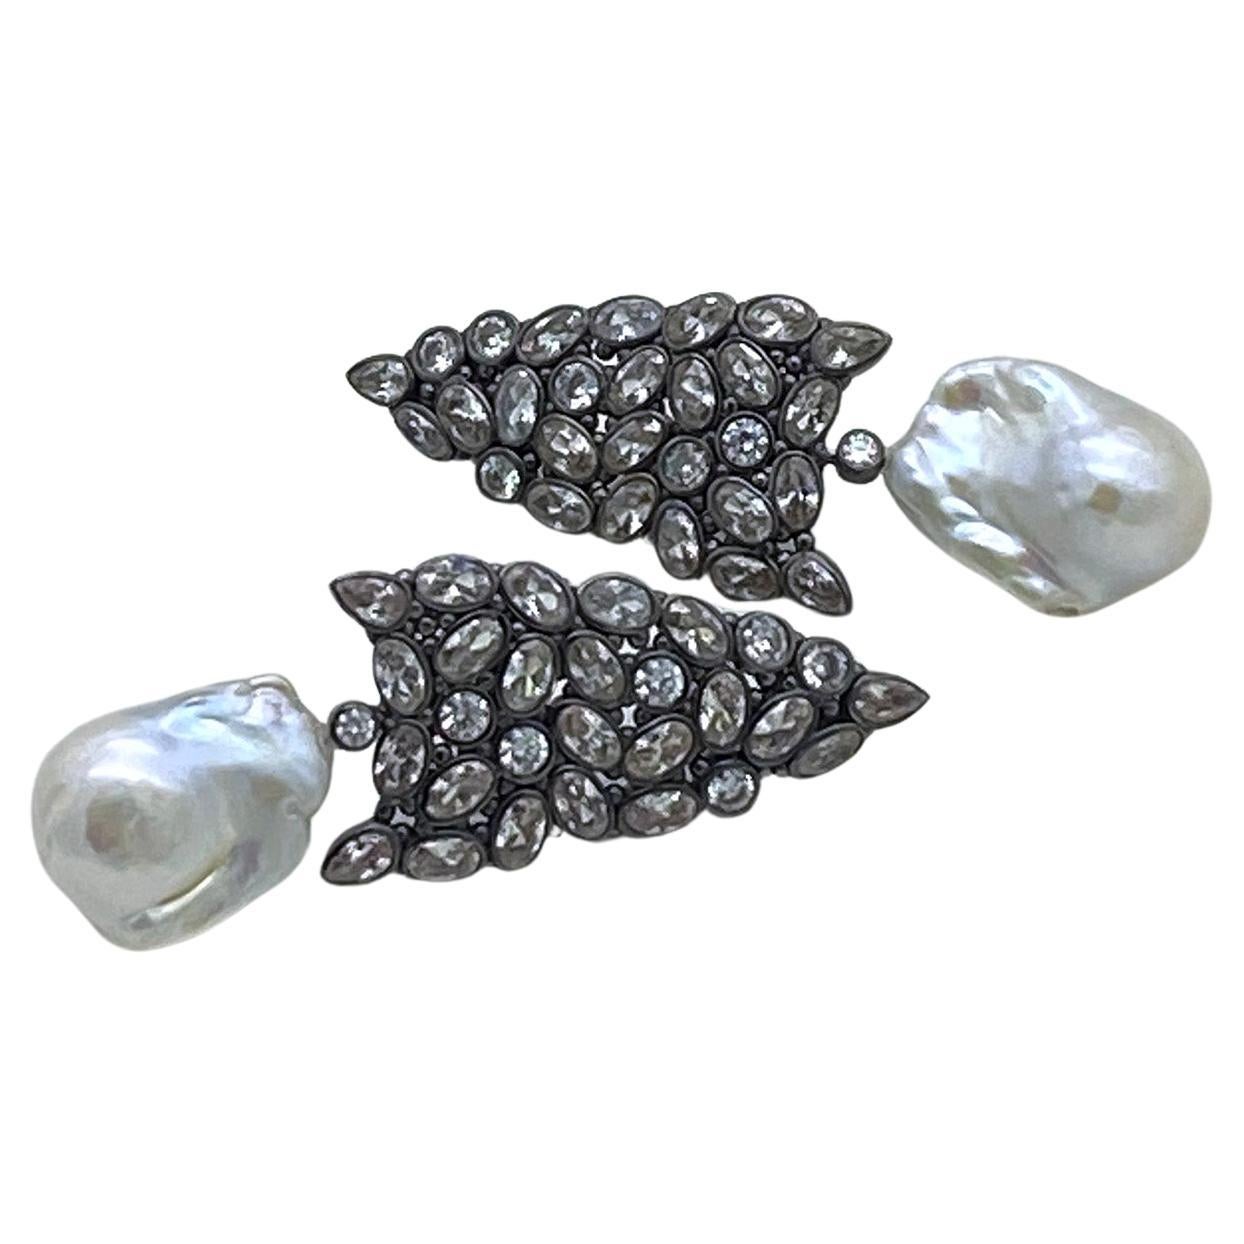 Il s'agit d'une paire de boucles d'oreilles en perles baroques et CZ. Les boucles d'oreilles en argent plaqué or noir sont composées de plusieurs formes de grappes de CZ serties dans un cadre en forme de pointe de flèche et de pendentifs avec une